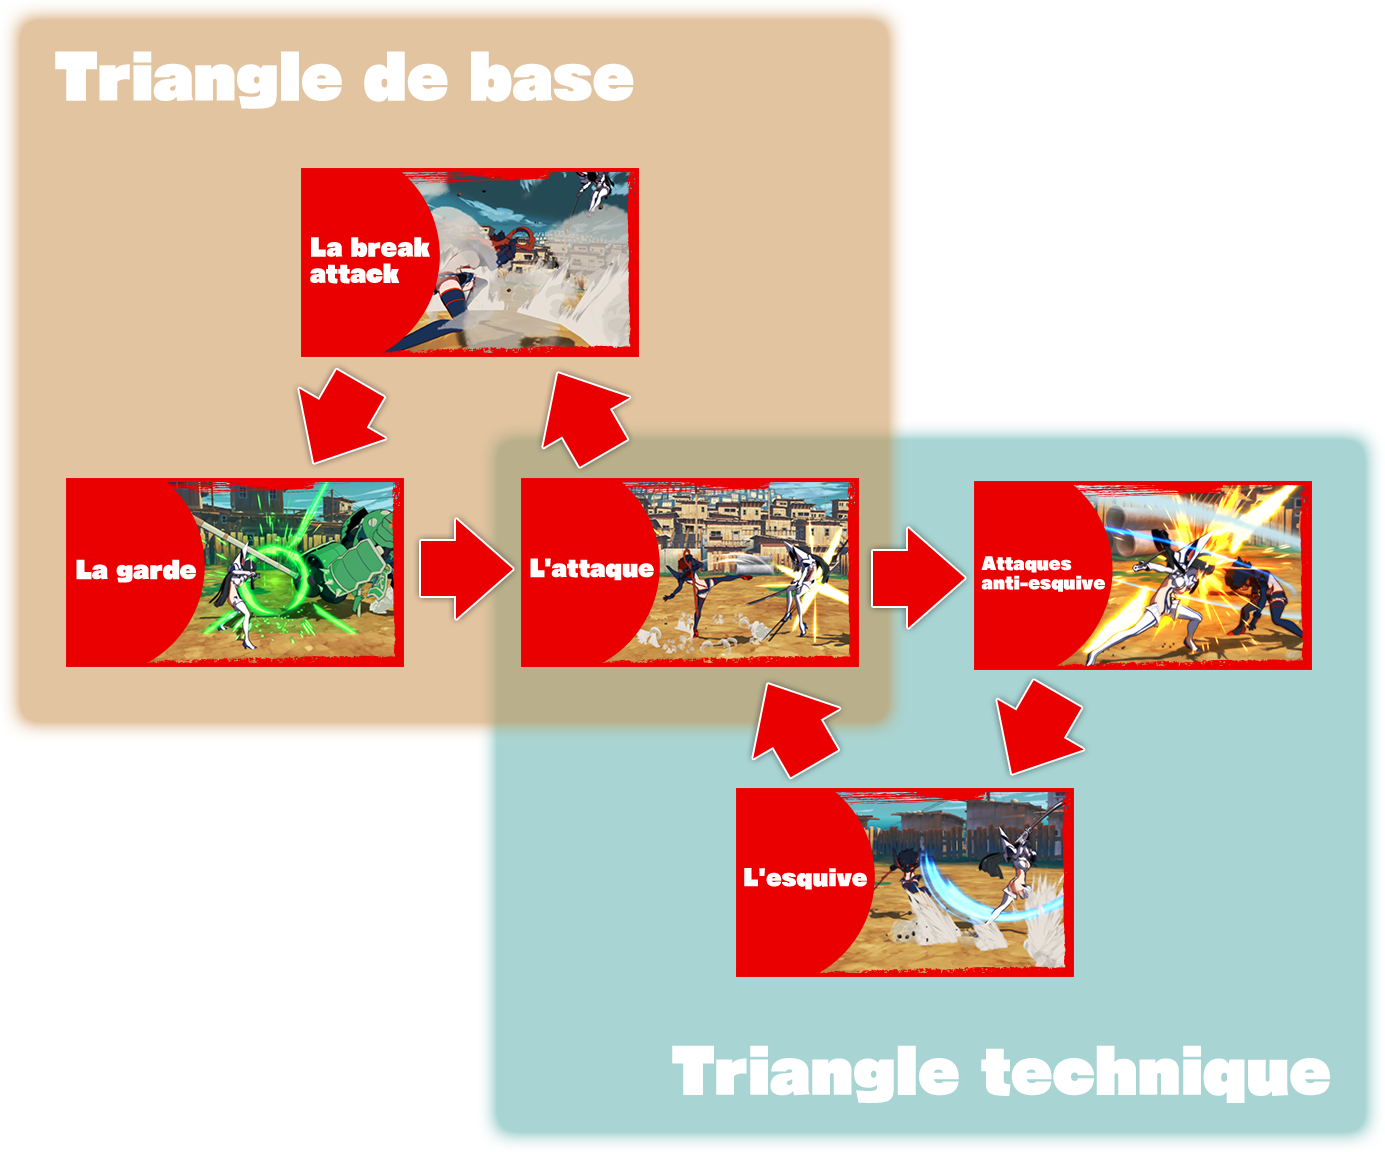 Triangle de base / Triangle technique